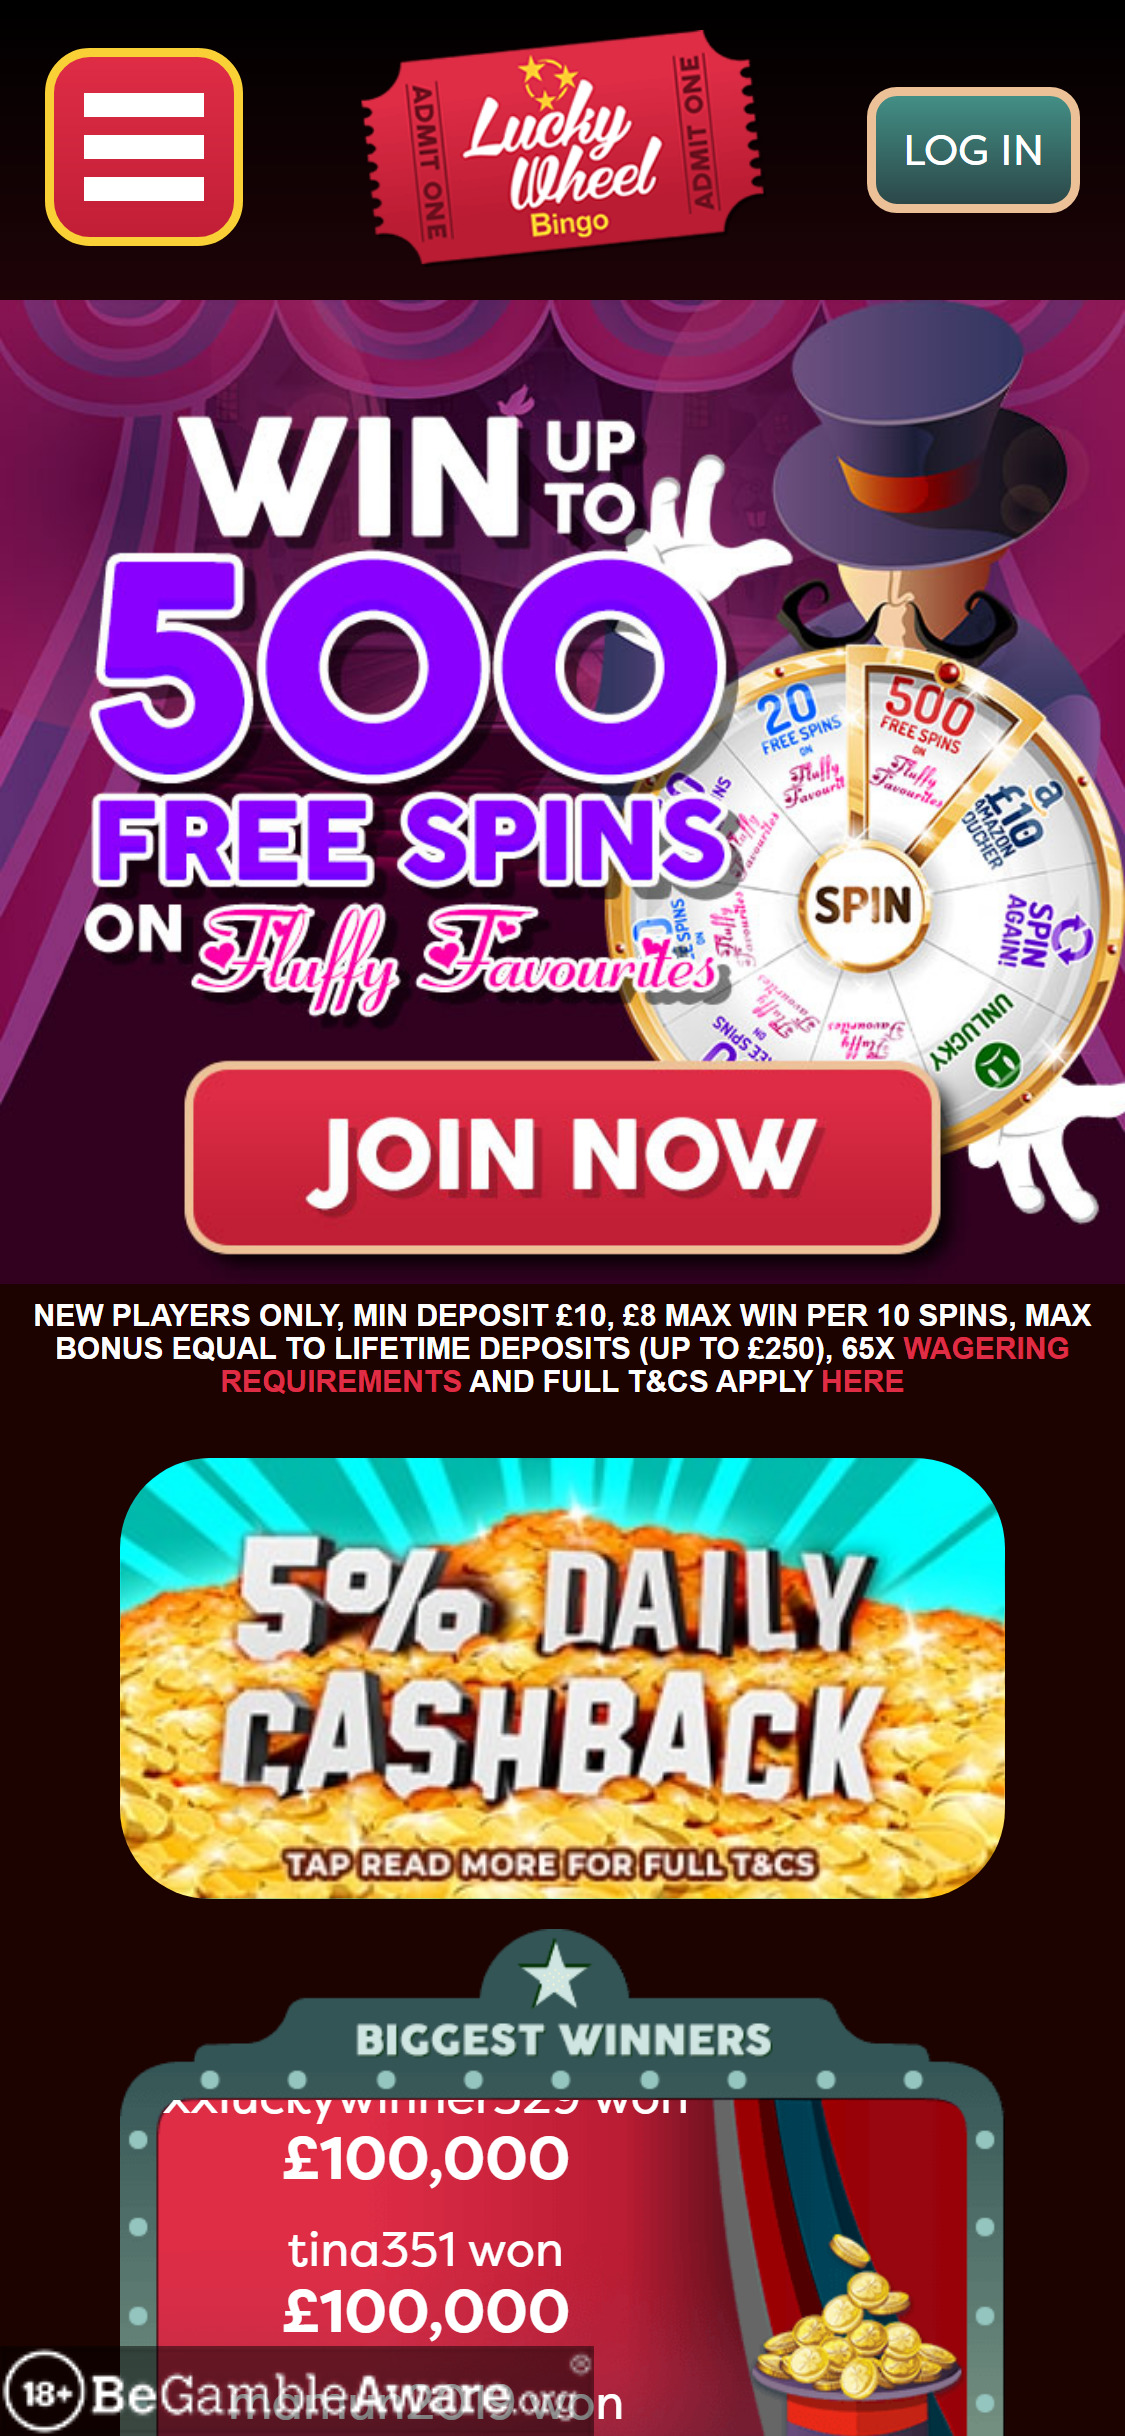 Lucky Wheel Bingo Casino Mobile Review